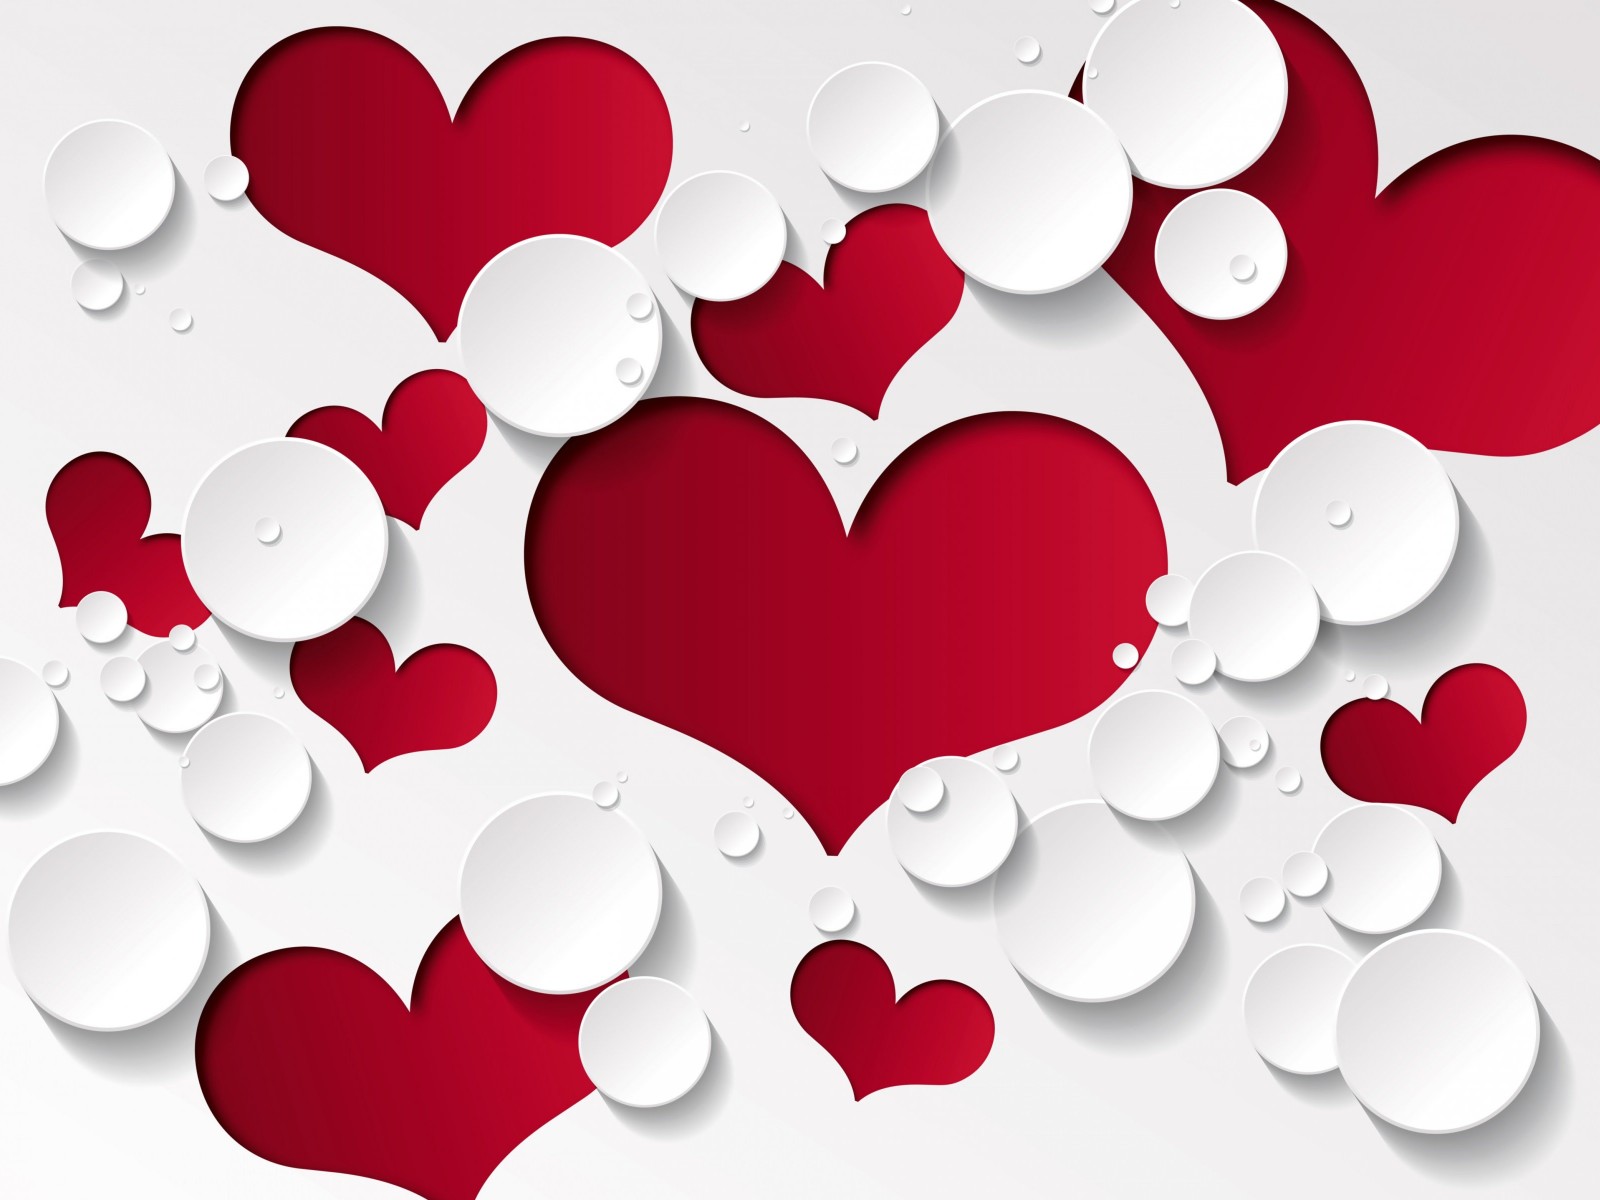 Love Heart Shaped Pattern Wallpaper for Desktop 1600x1200